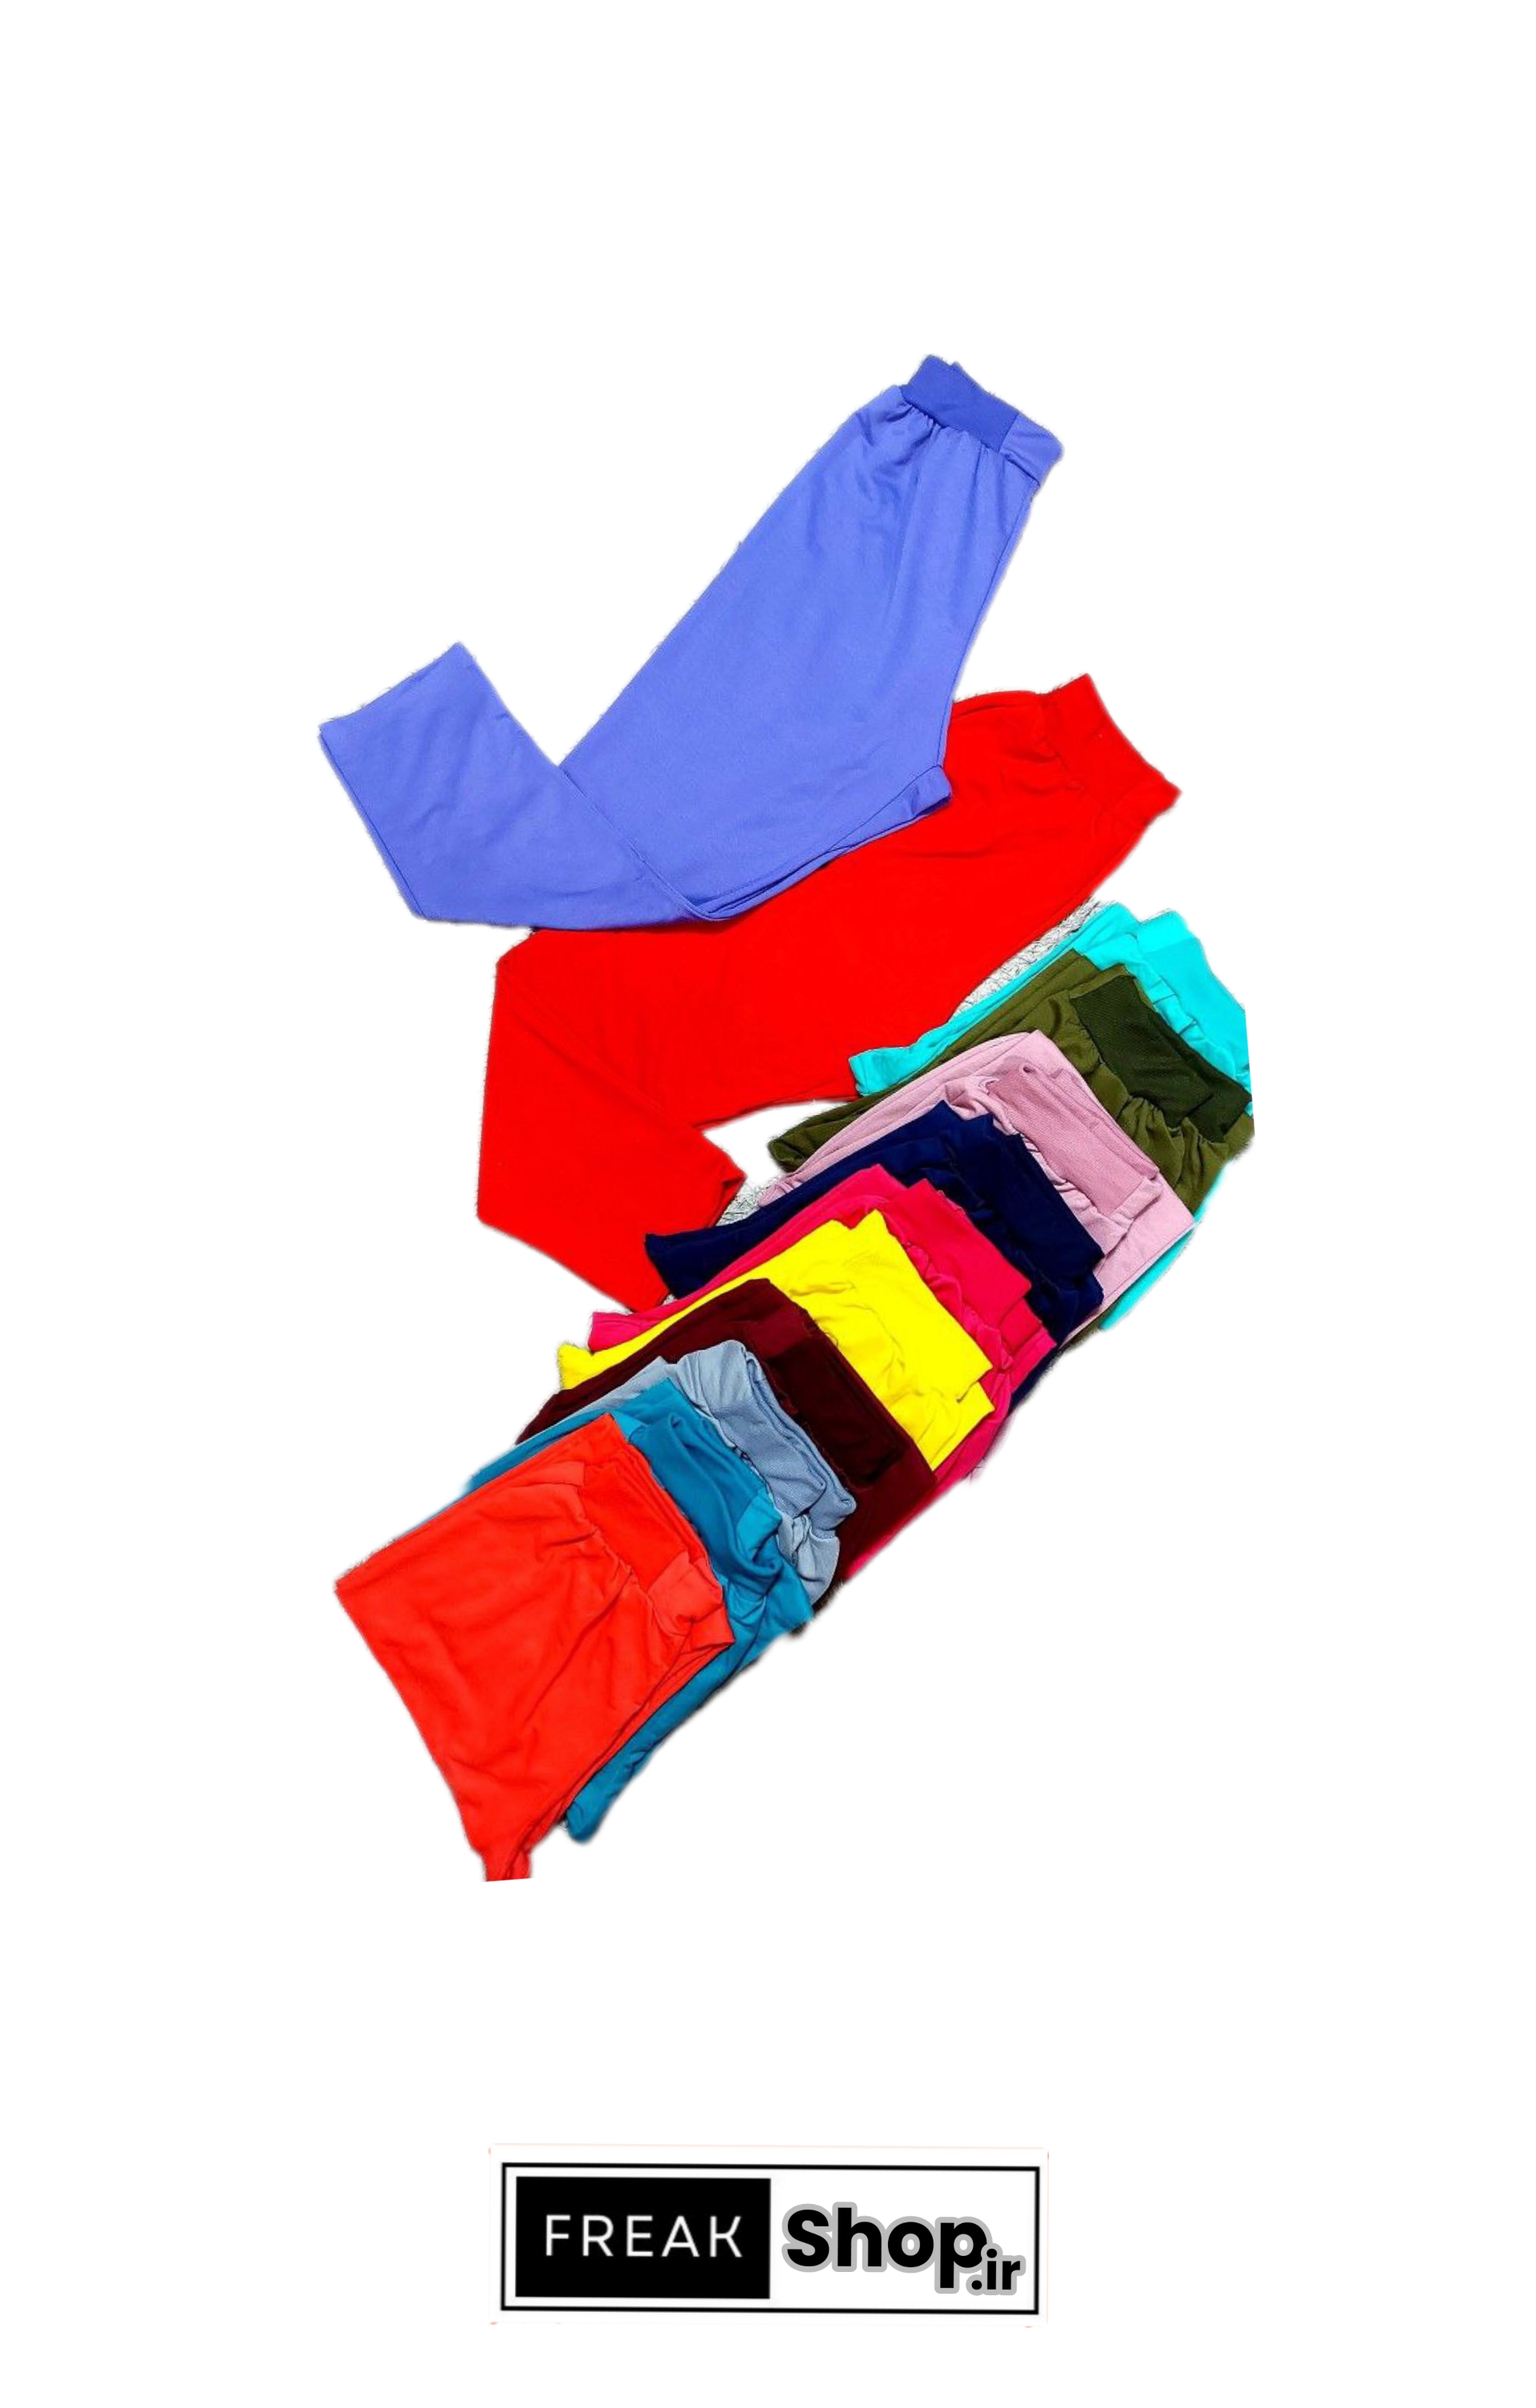 شلوار خونگی دمپا ساده جنس دورس 12 رنگ قیمت 135.000 تومن خرید اینترنتی لباس اهواز